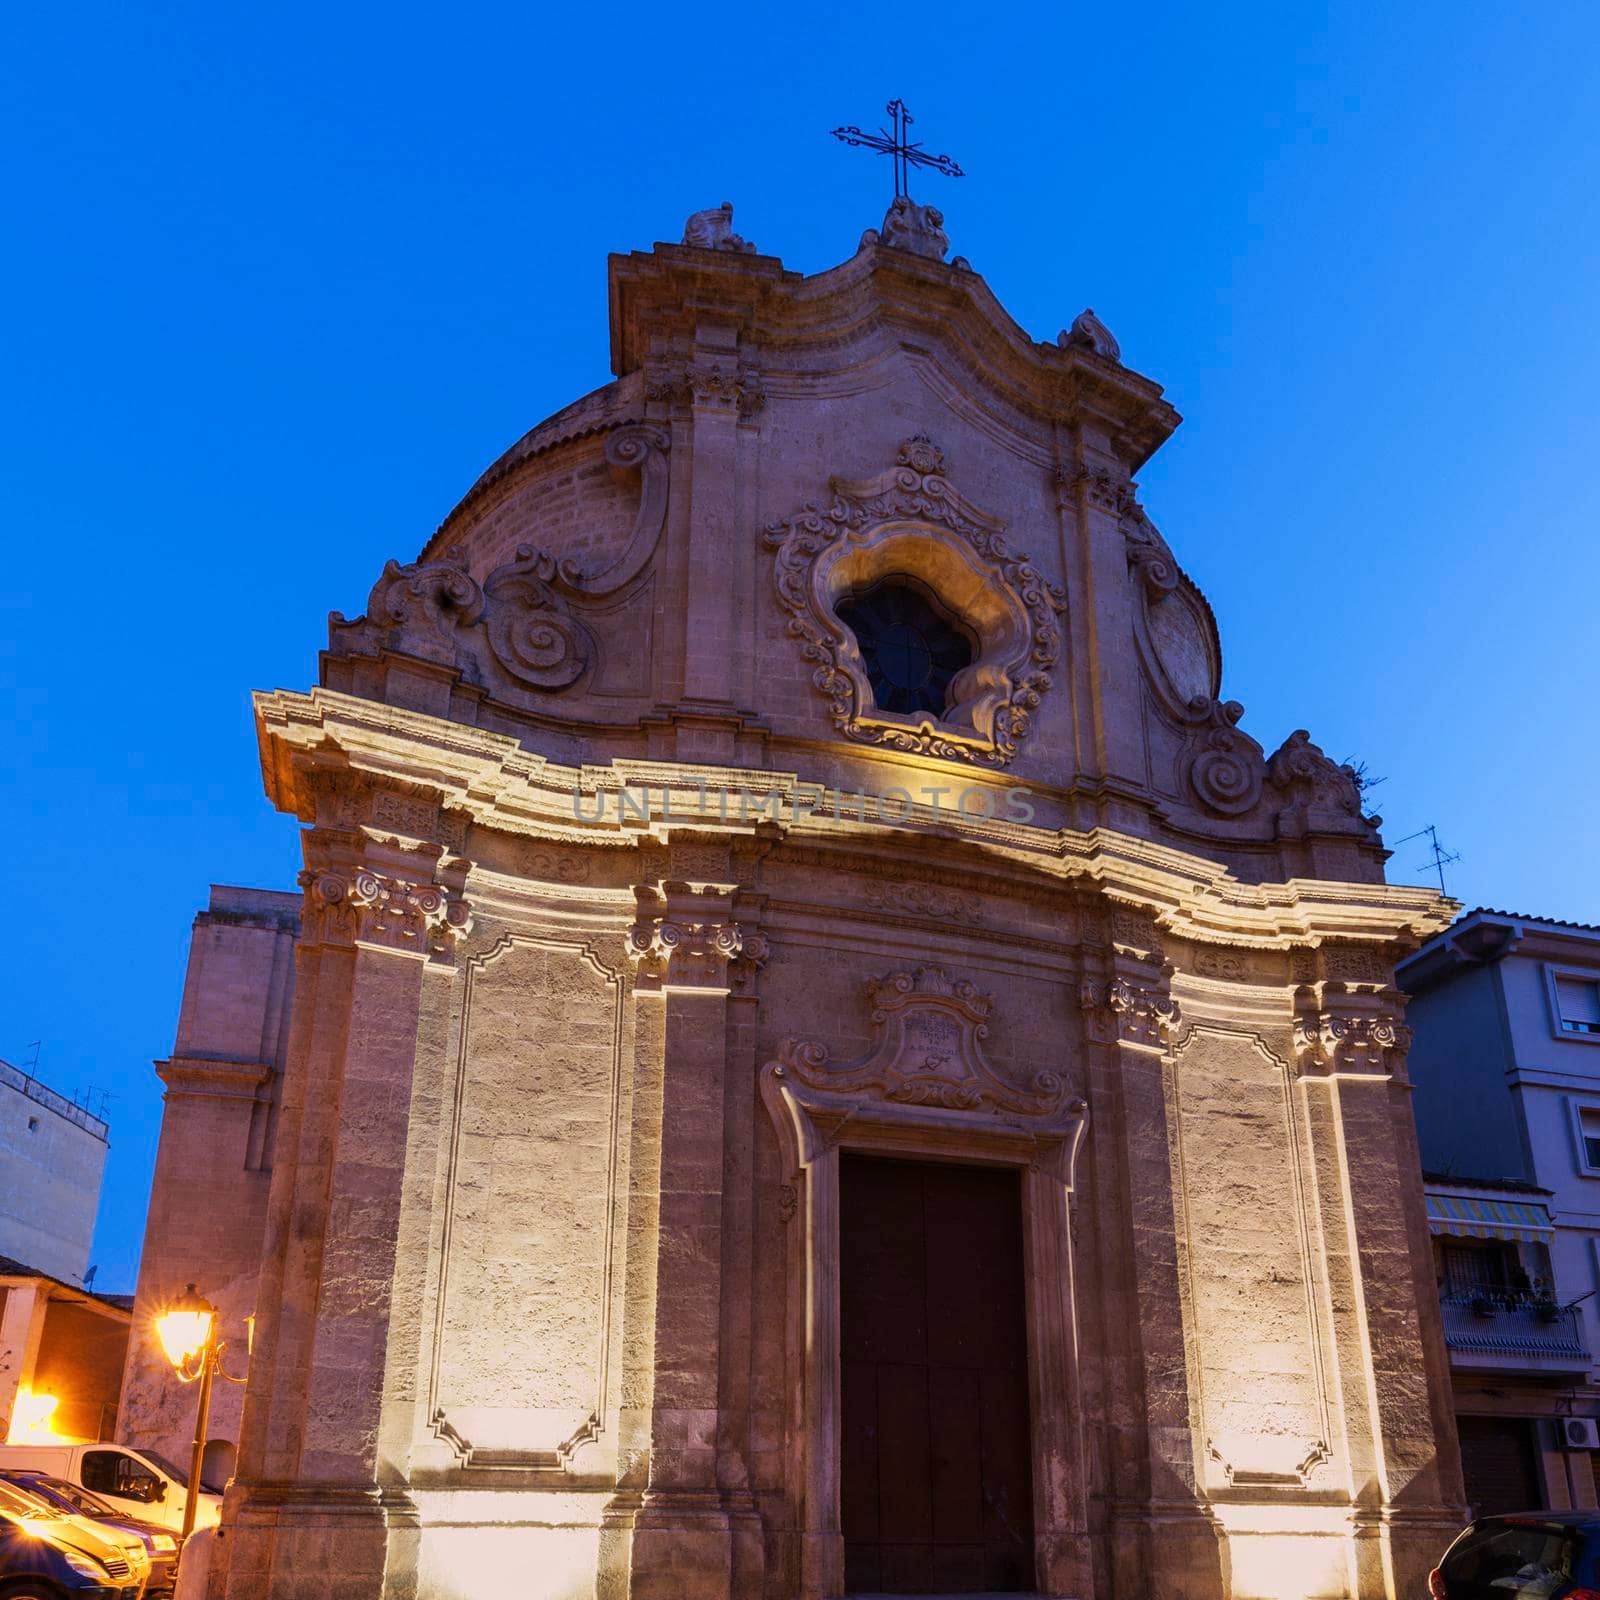 Chiesa dell'Addolorata in the center of Foggia. Foggia, Apulia, Italy.